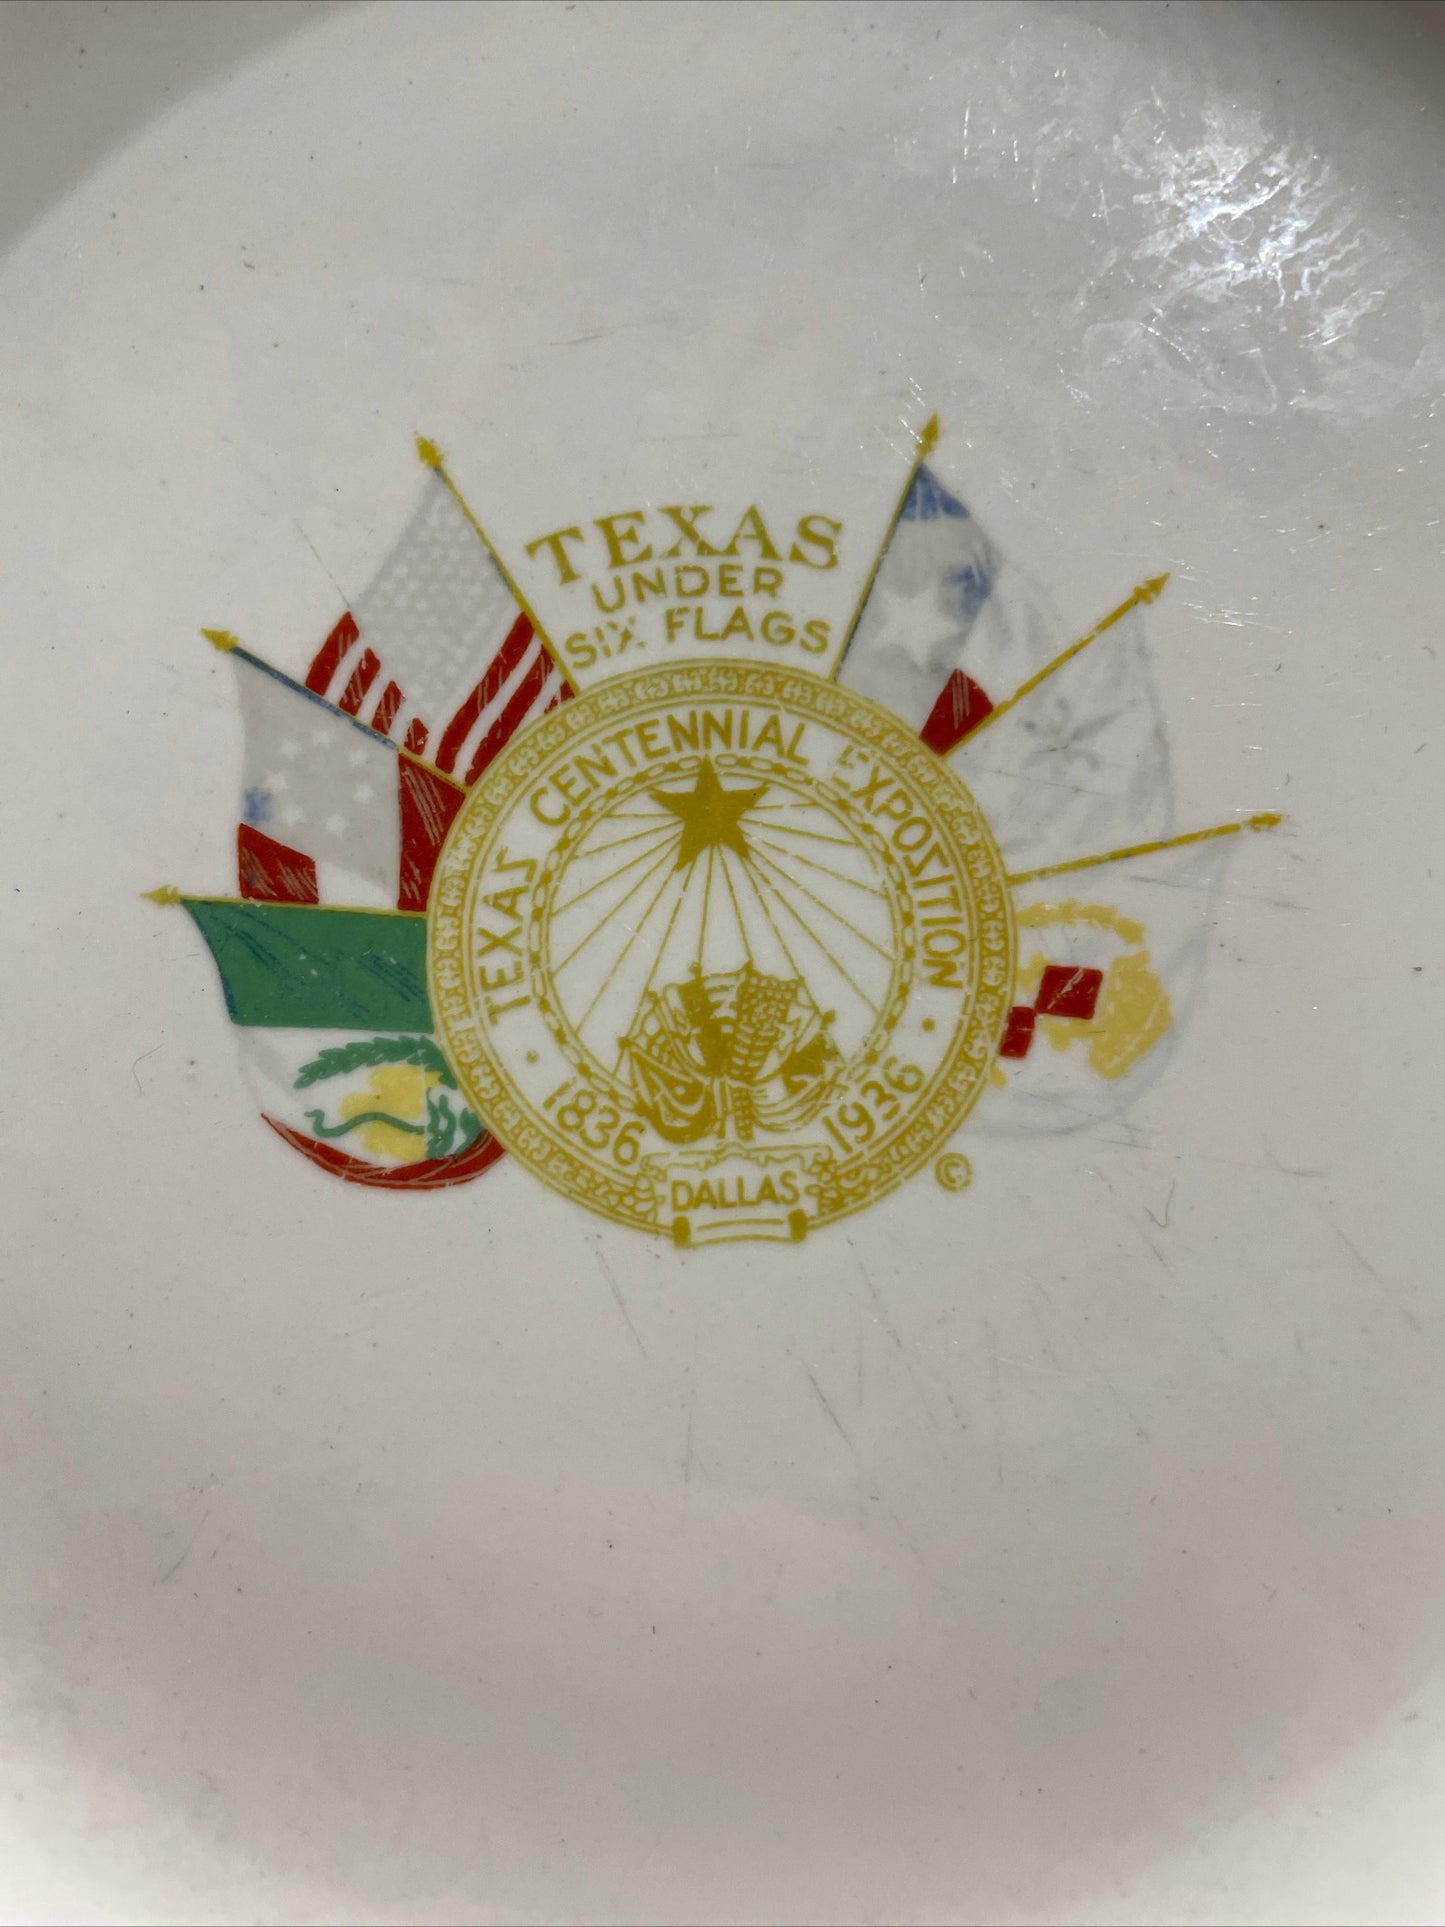 1936 Texas Under 6 Flags Centennial Plate